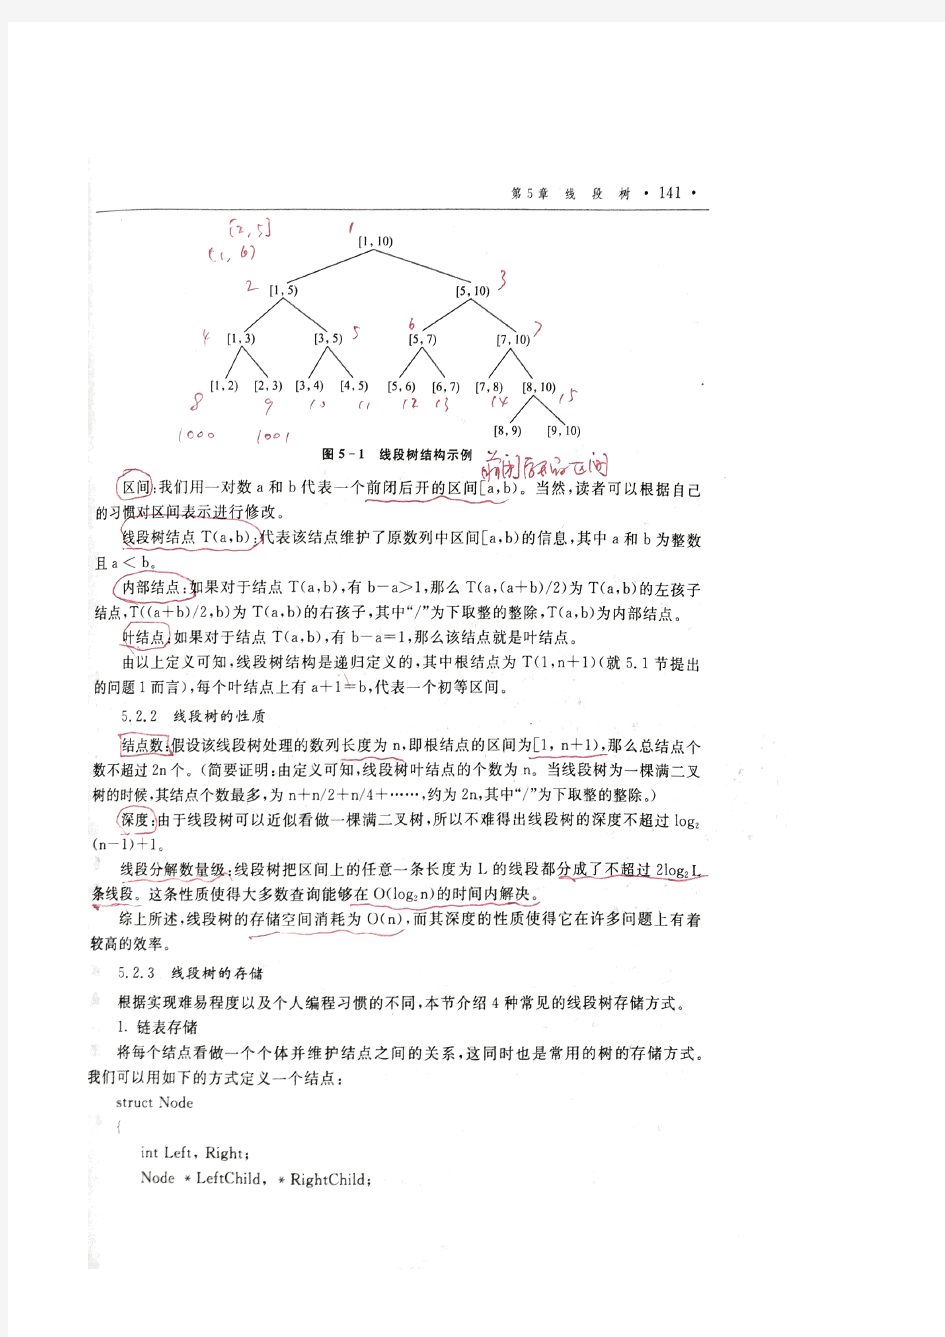 第5章线段树高级数据结构